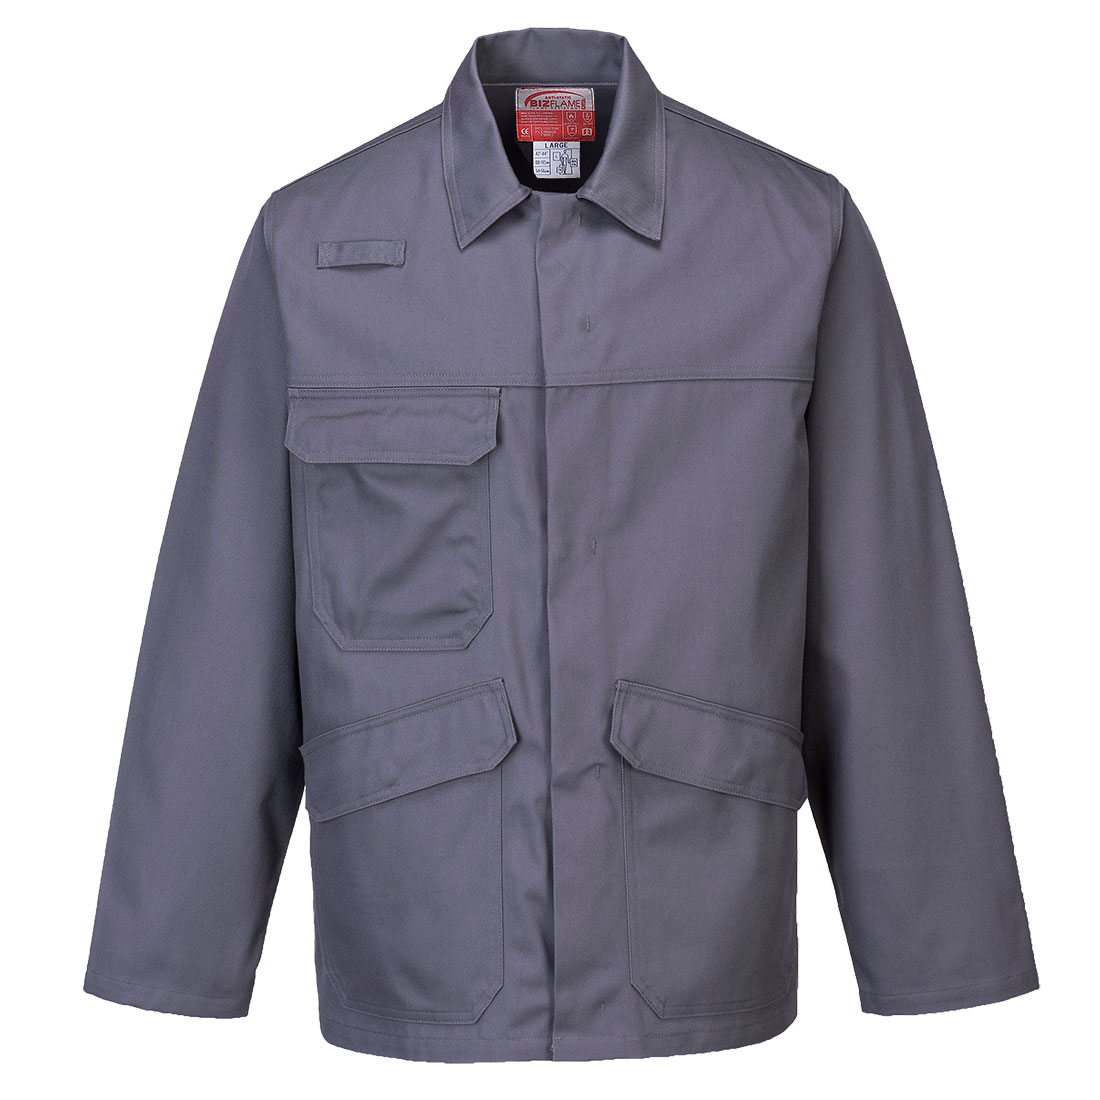 Bizflame Pro Jacket Size XXXL Grey